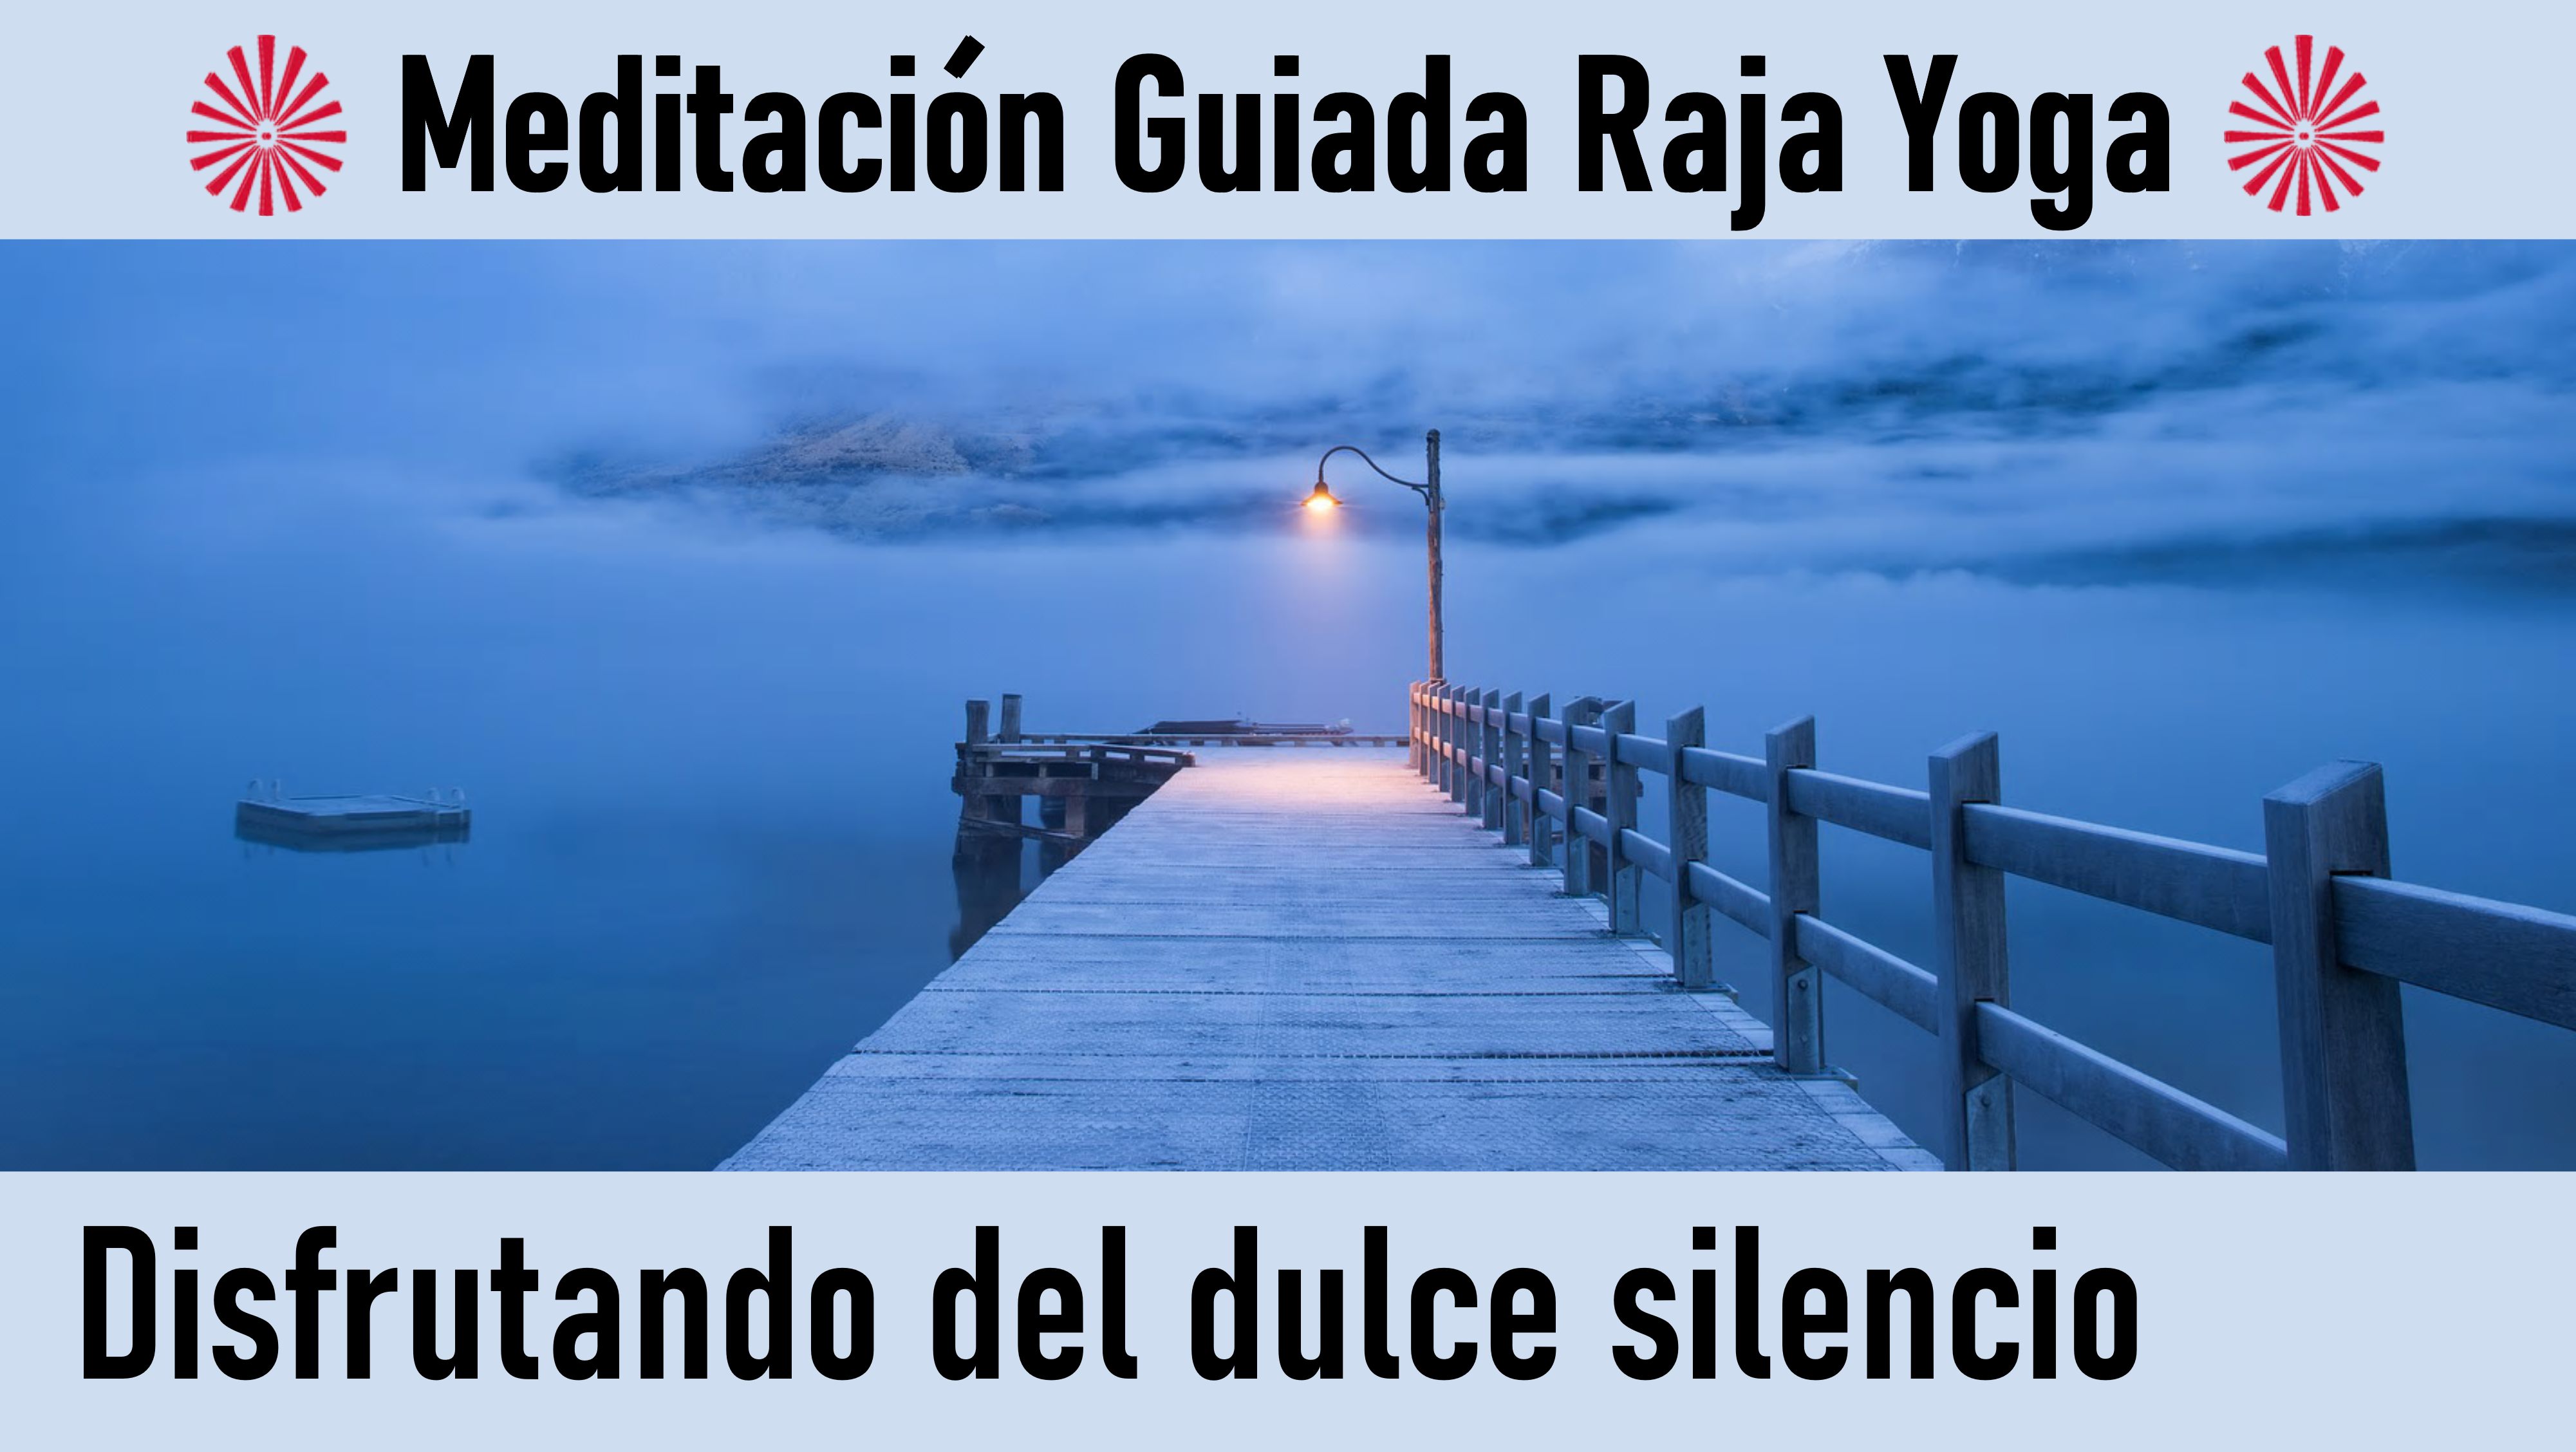 Meditación Raja Yoga:Disfrutando del dulce silencio (26 Junio 2020) On-line desde Sevilla